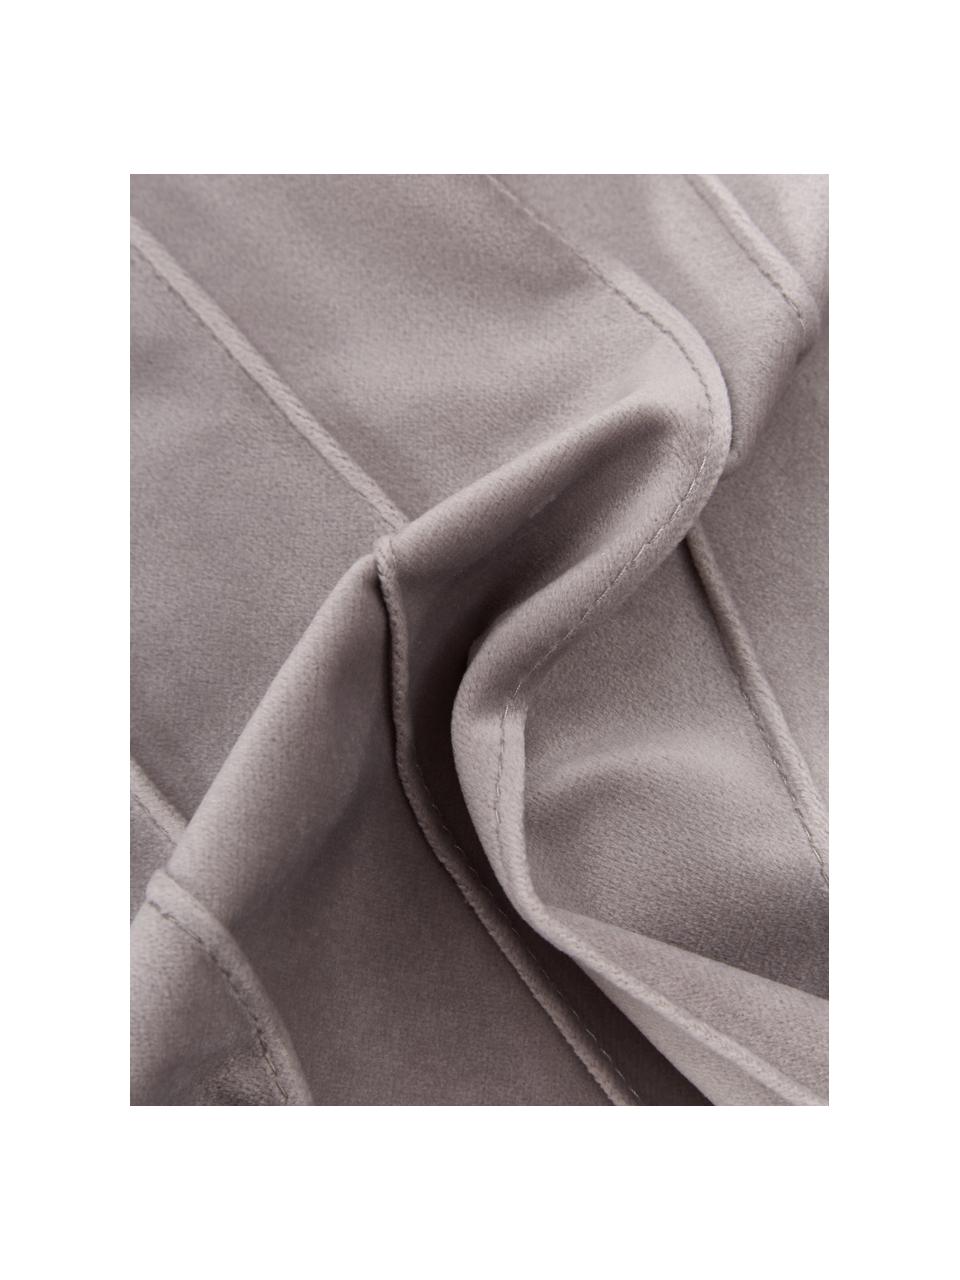 Fluwelen kussenhoes Leyla in lichtgrijs met structuurpatroon, Fluweel (100% polyester), Grijs, B 30 x L 50 cm